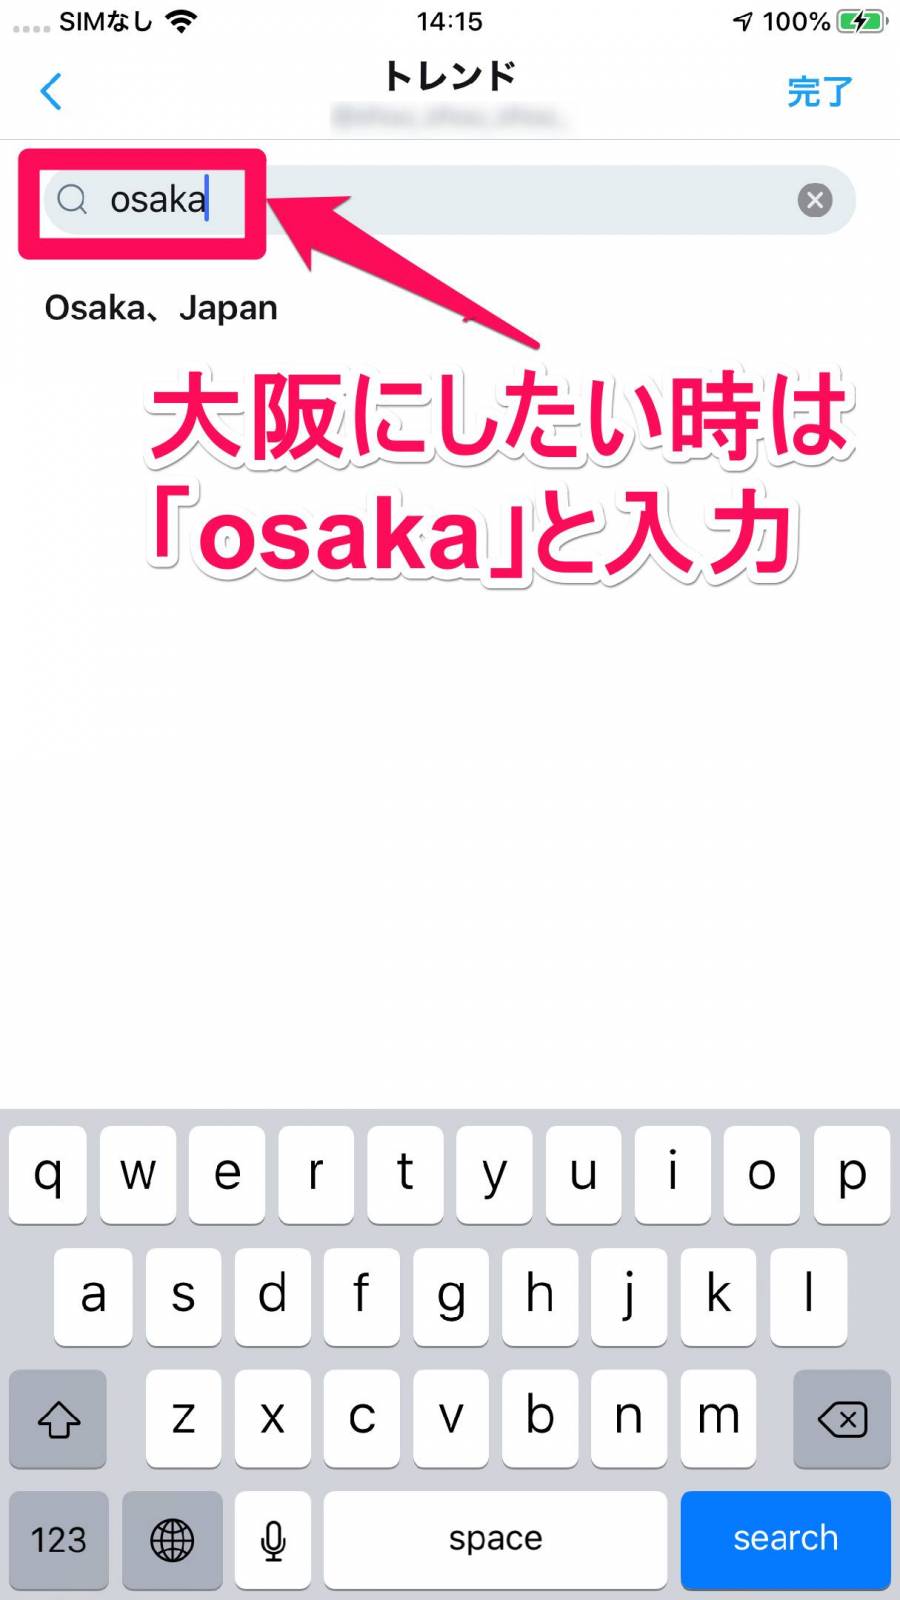 検索窓に「osaka」と入力すると、「Osaka、Japan」が表示される